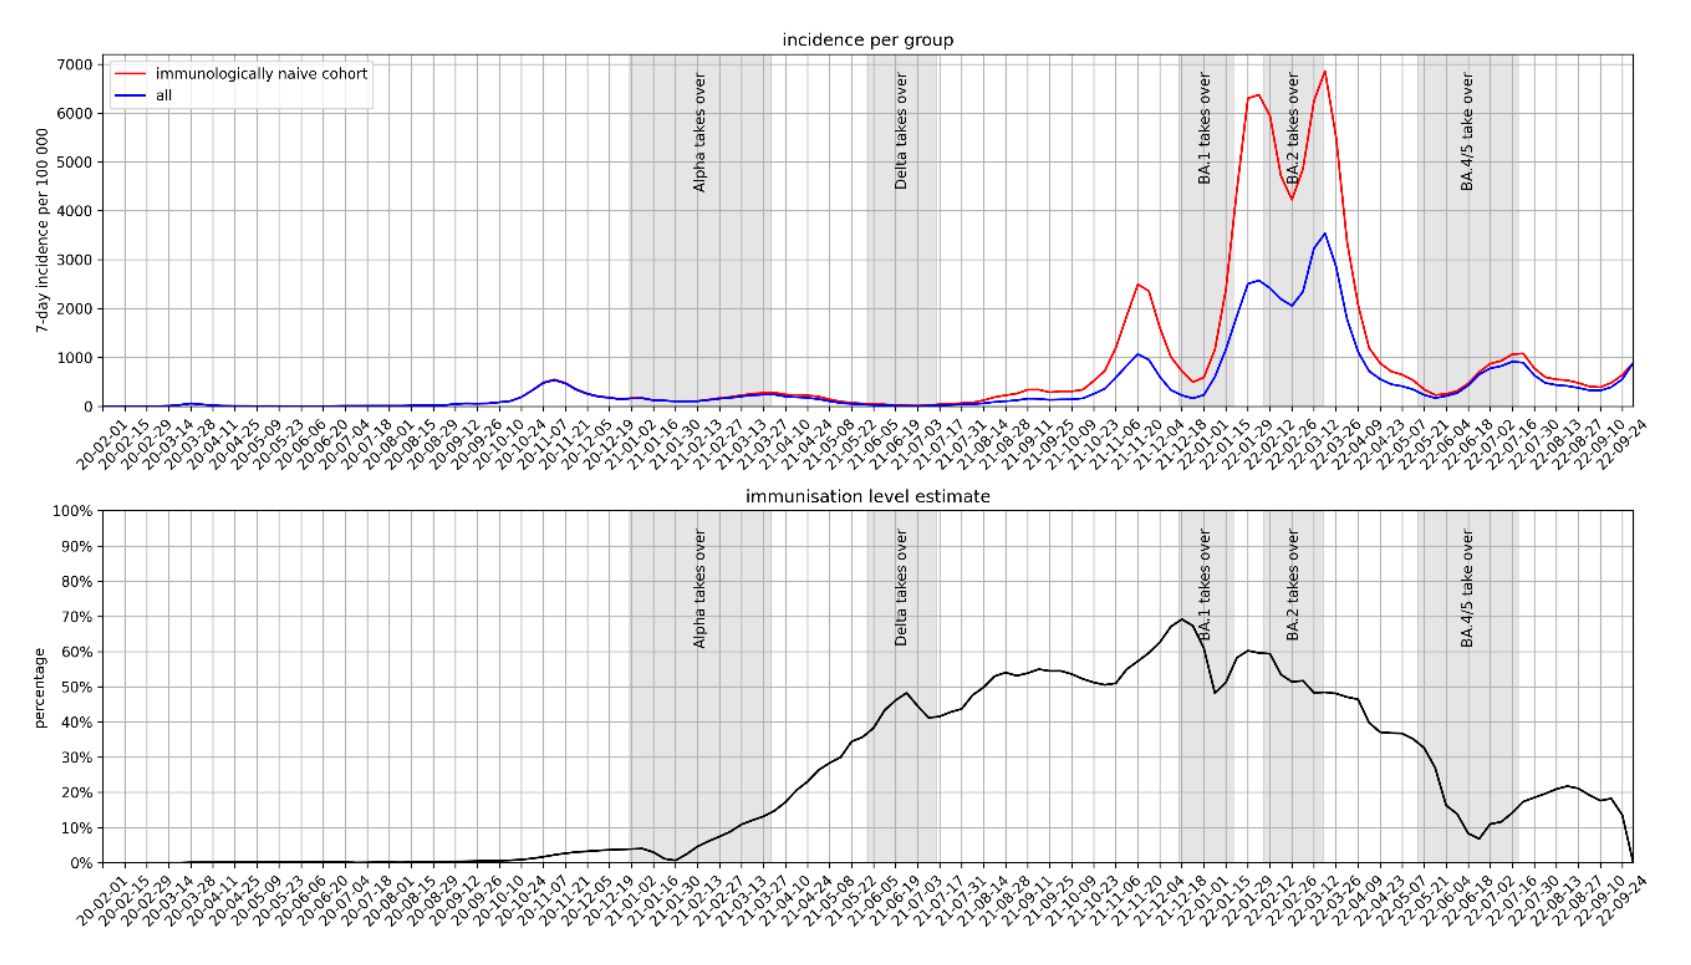 Abbildung aus Report: Vergleich der Inzidenz der immunologisch naiven Kohorte (rot) und der Gesamtinzidenz (blau) über den Zeitverlauf. Das gemessene Immunitätslevel, welches sich aus dem Quotienten der beiden berechnet, kann dem unteren Plot entnommen werden.